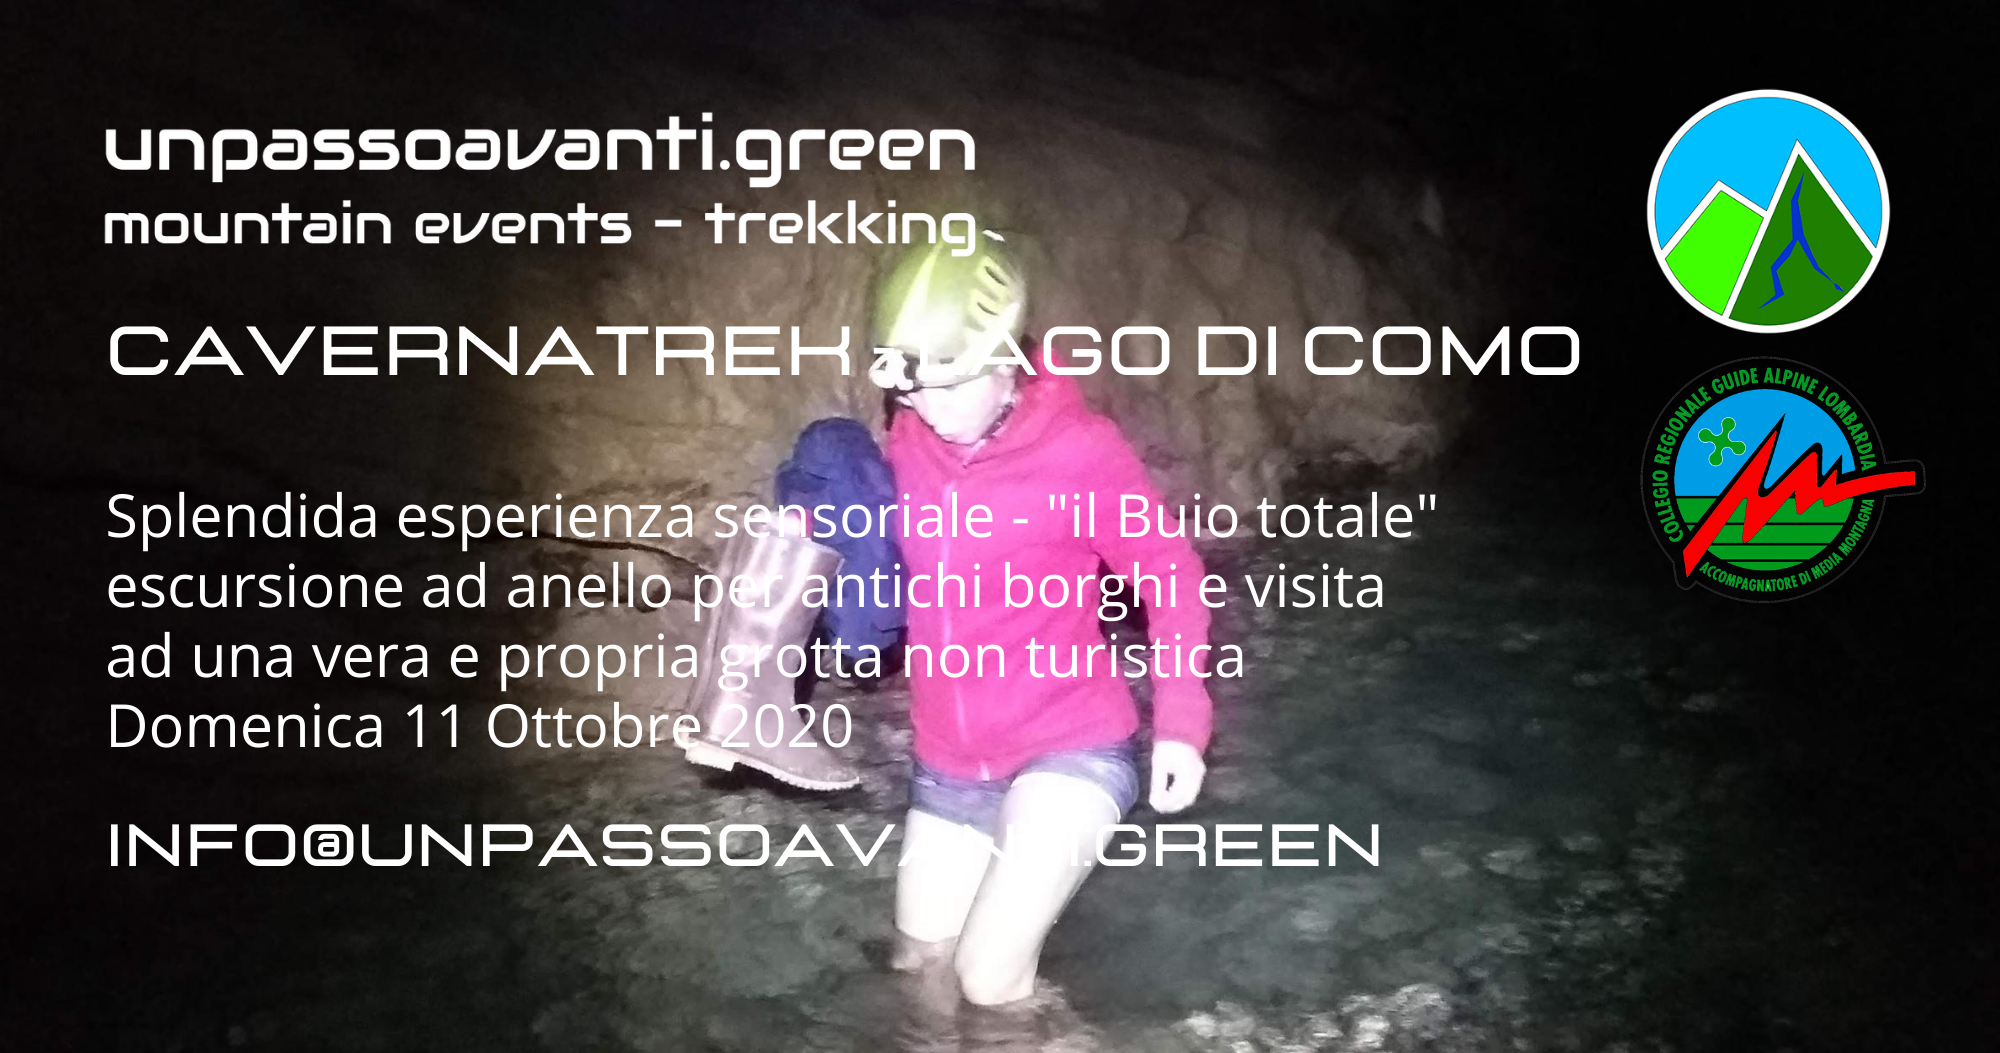 Grotta Trek unpassoavanti.green